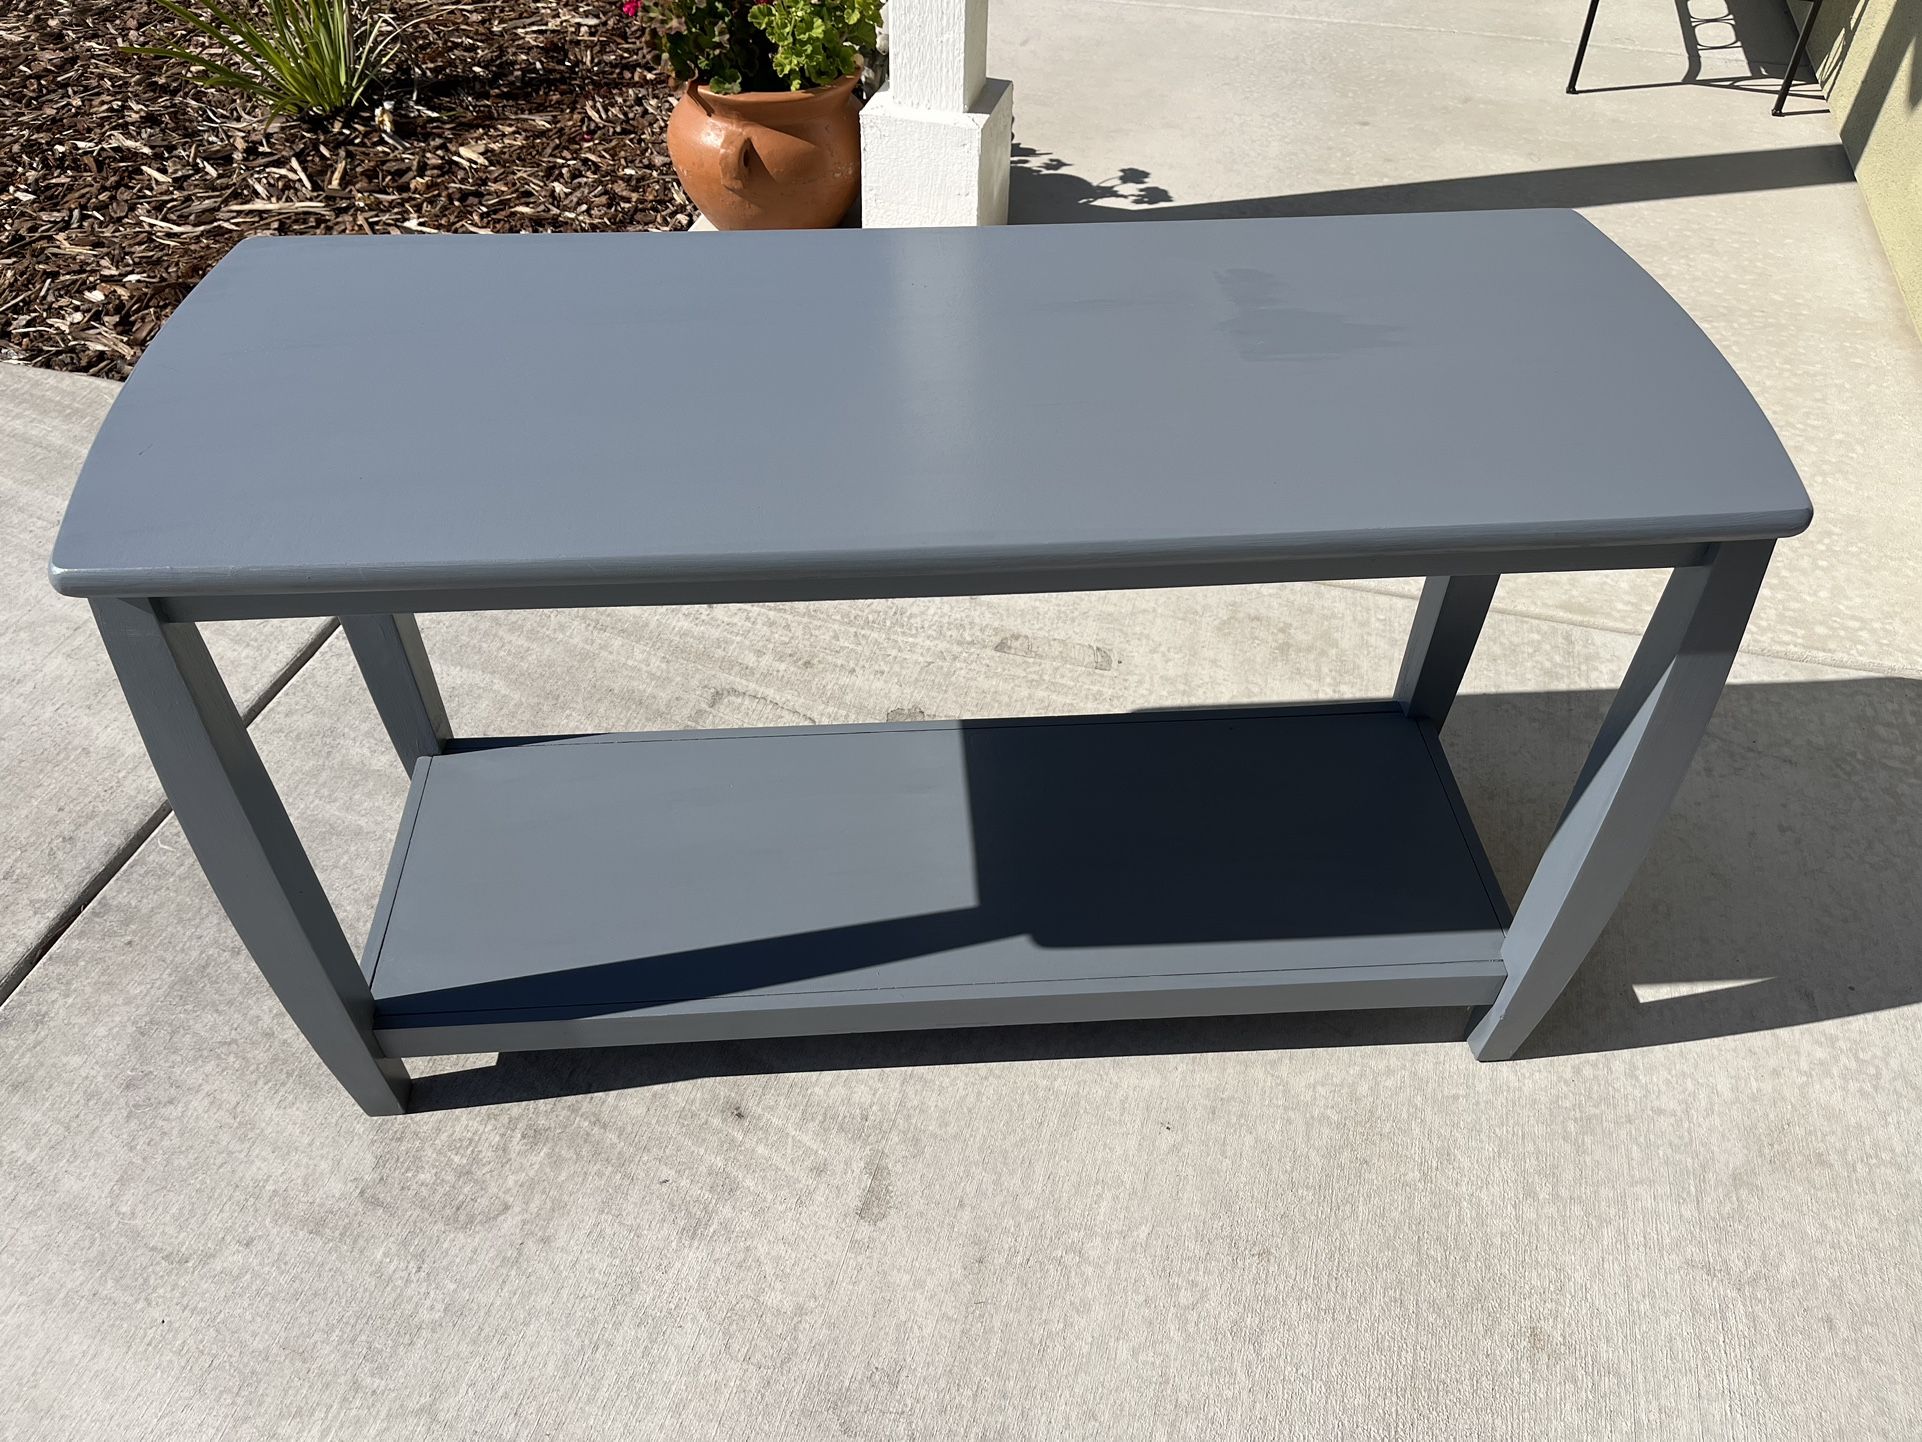 Sofa/Console Table